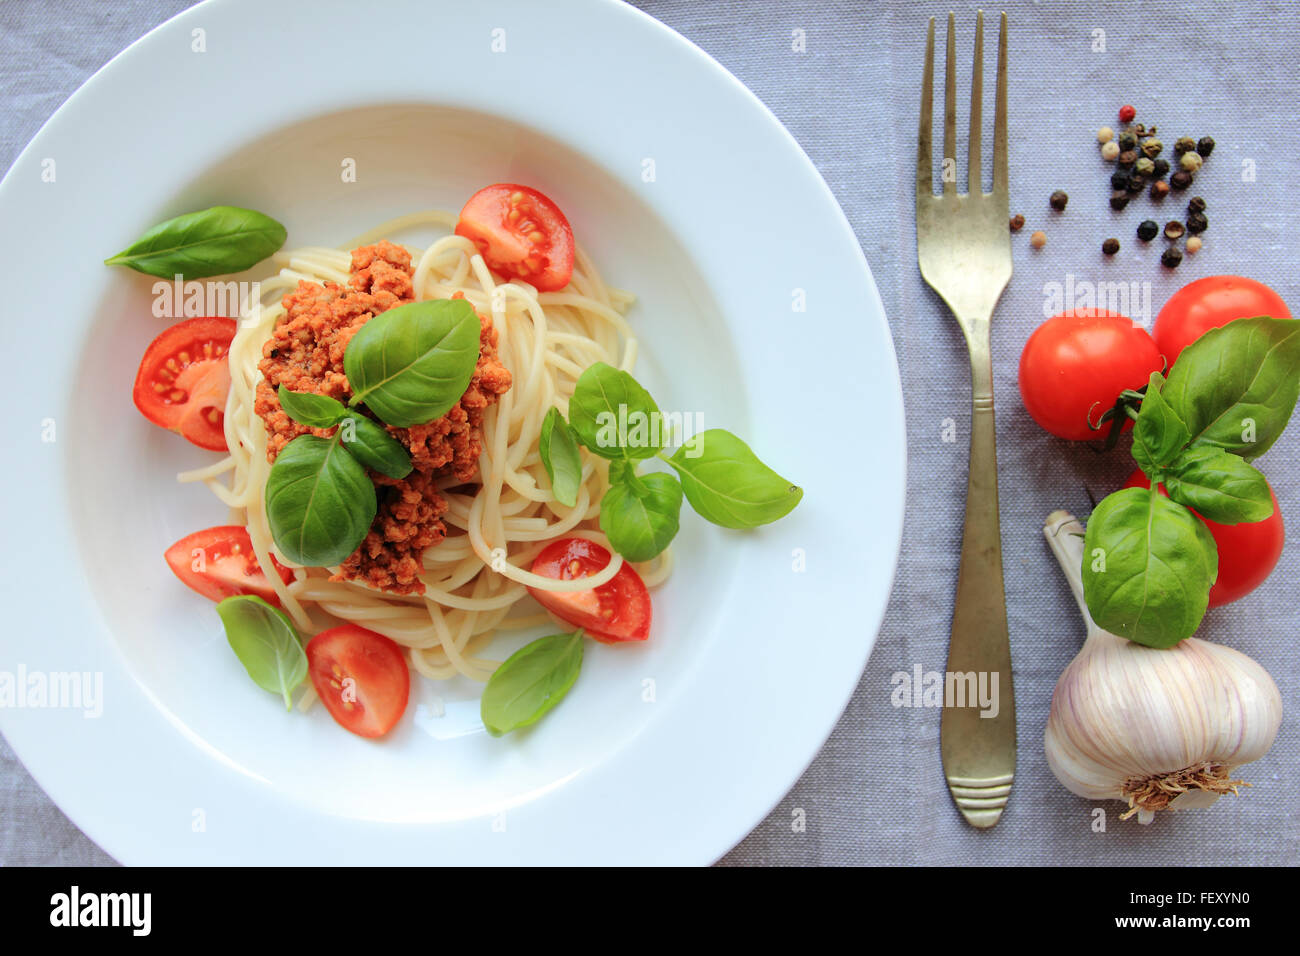 Spaghetti con la carne sulla base di ragù alla bolognese con basilico fresco sulla piastra bianca Foto Stock